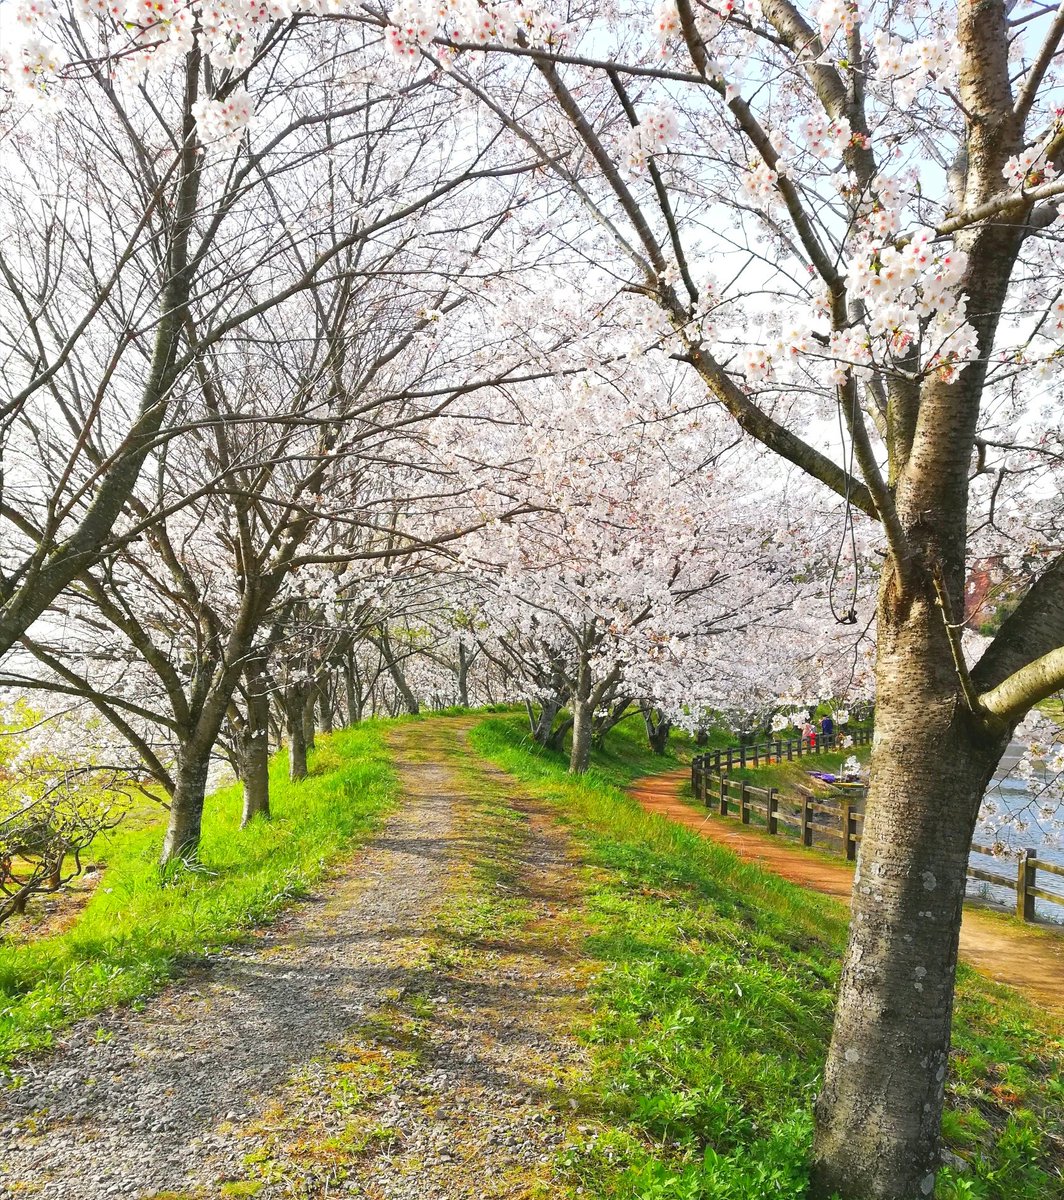 春は桜の名所で知られる熊本の立岡自然公園。秋は秋桜が咲いて美しいです。広い公園なので散歩する人も、釣りに来る人もちらほら。ピクニックバッグに弁当入れて花見したいよ(^_^;)🌸